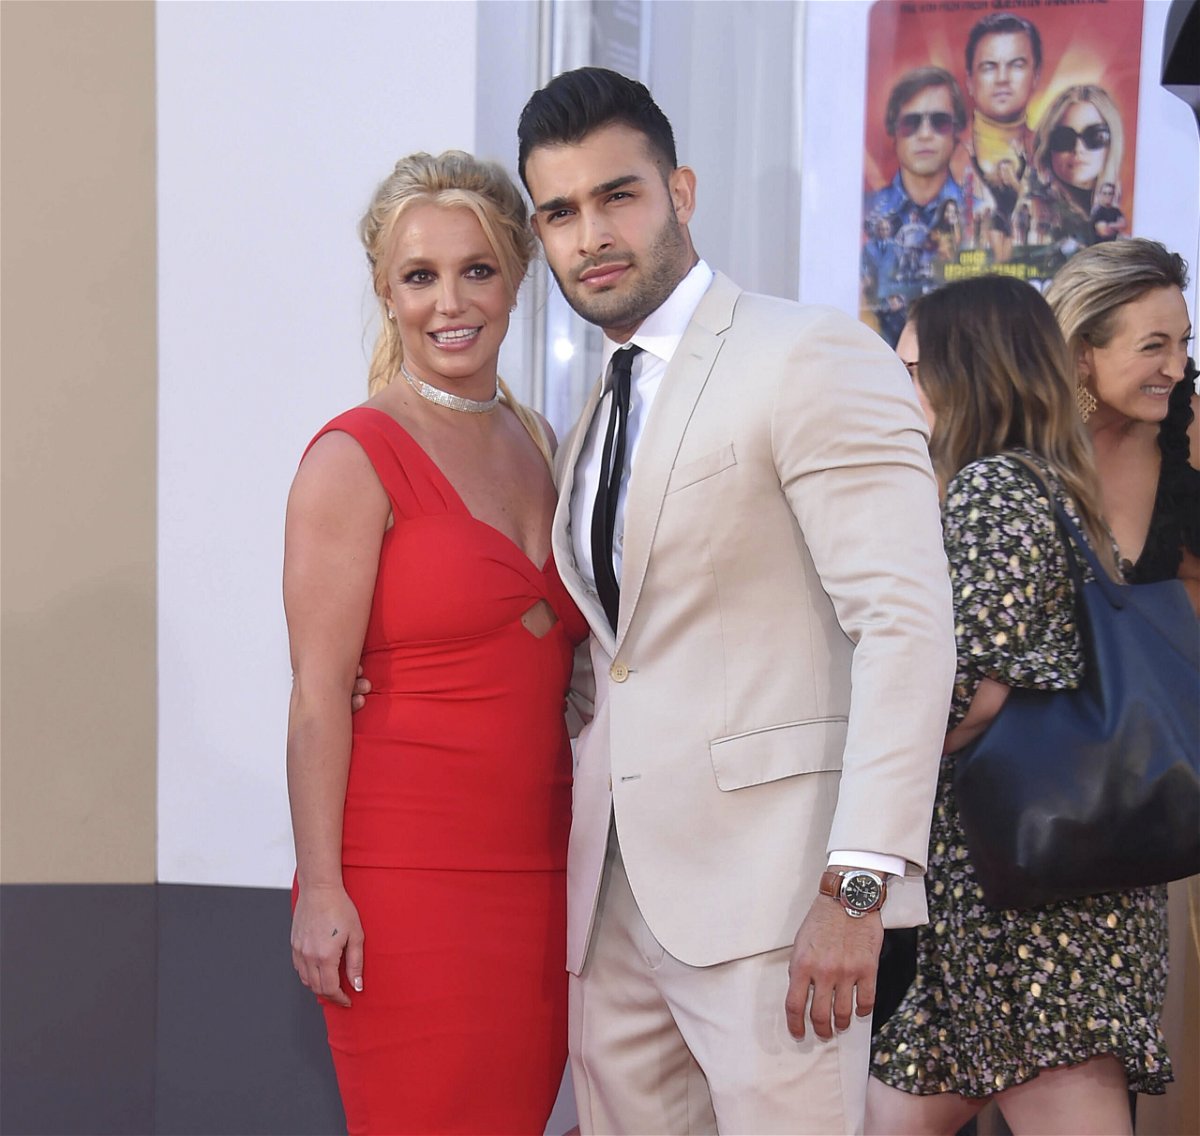 <i>zz/KGC-11/STAR MAX/IPx/AP</i><br/>Britney Spears and her fiancé